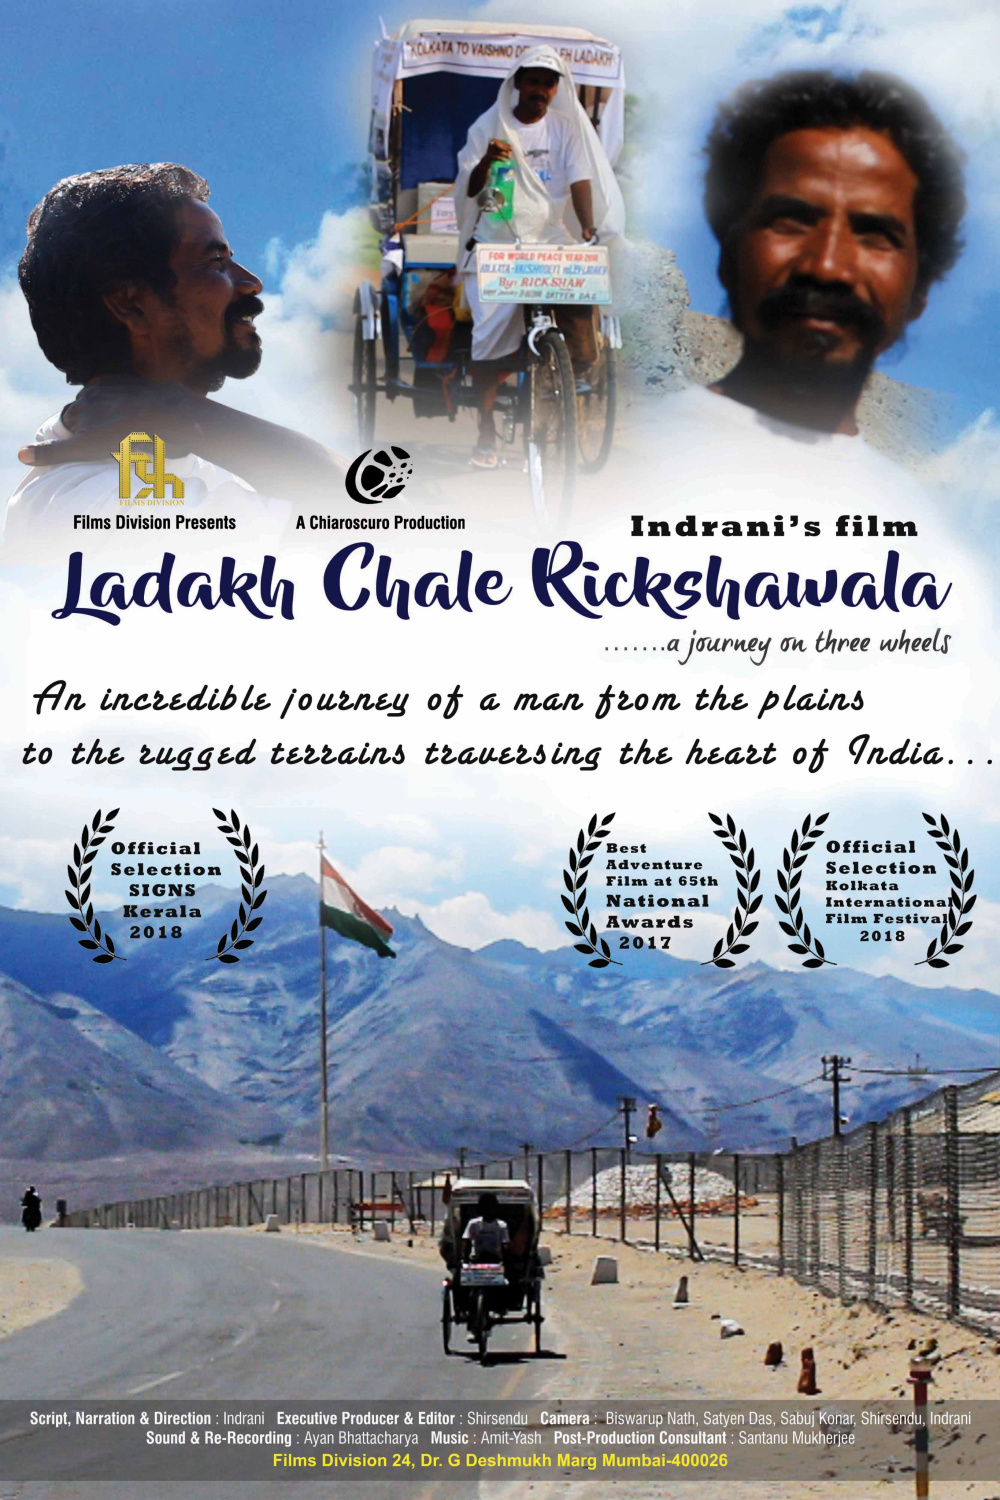 Ladakh Chale Rickshawala